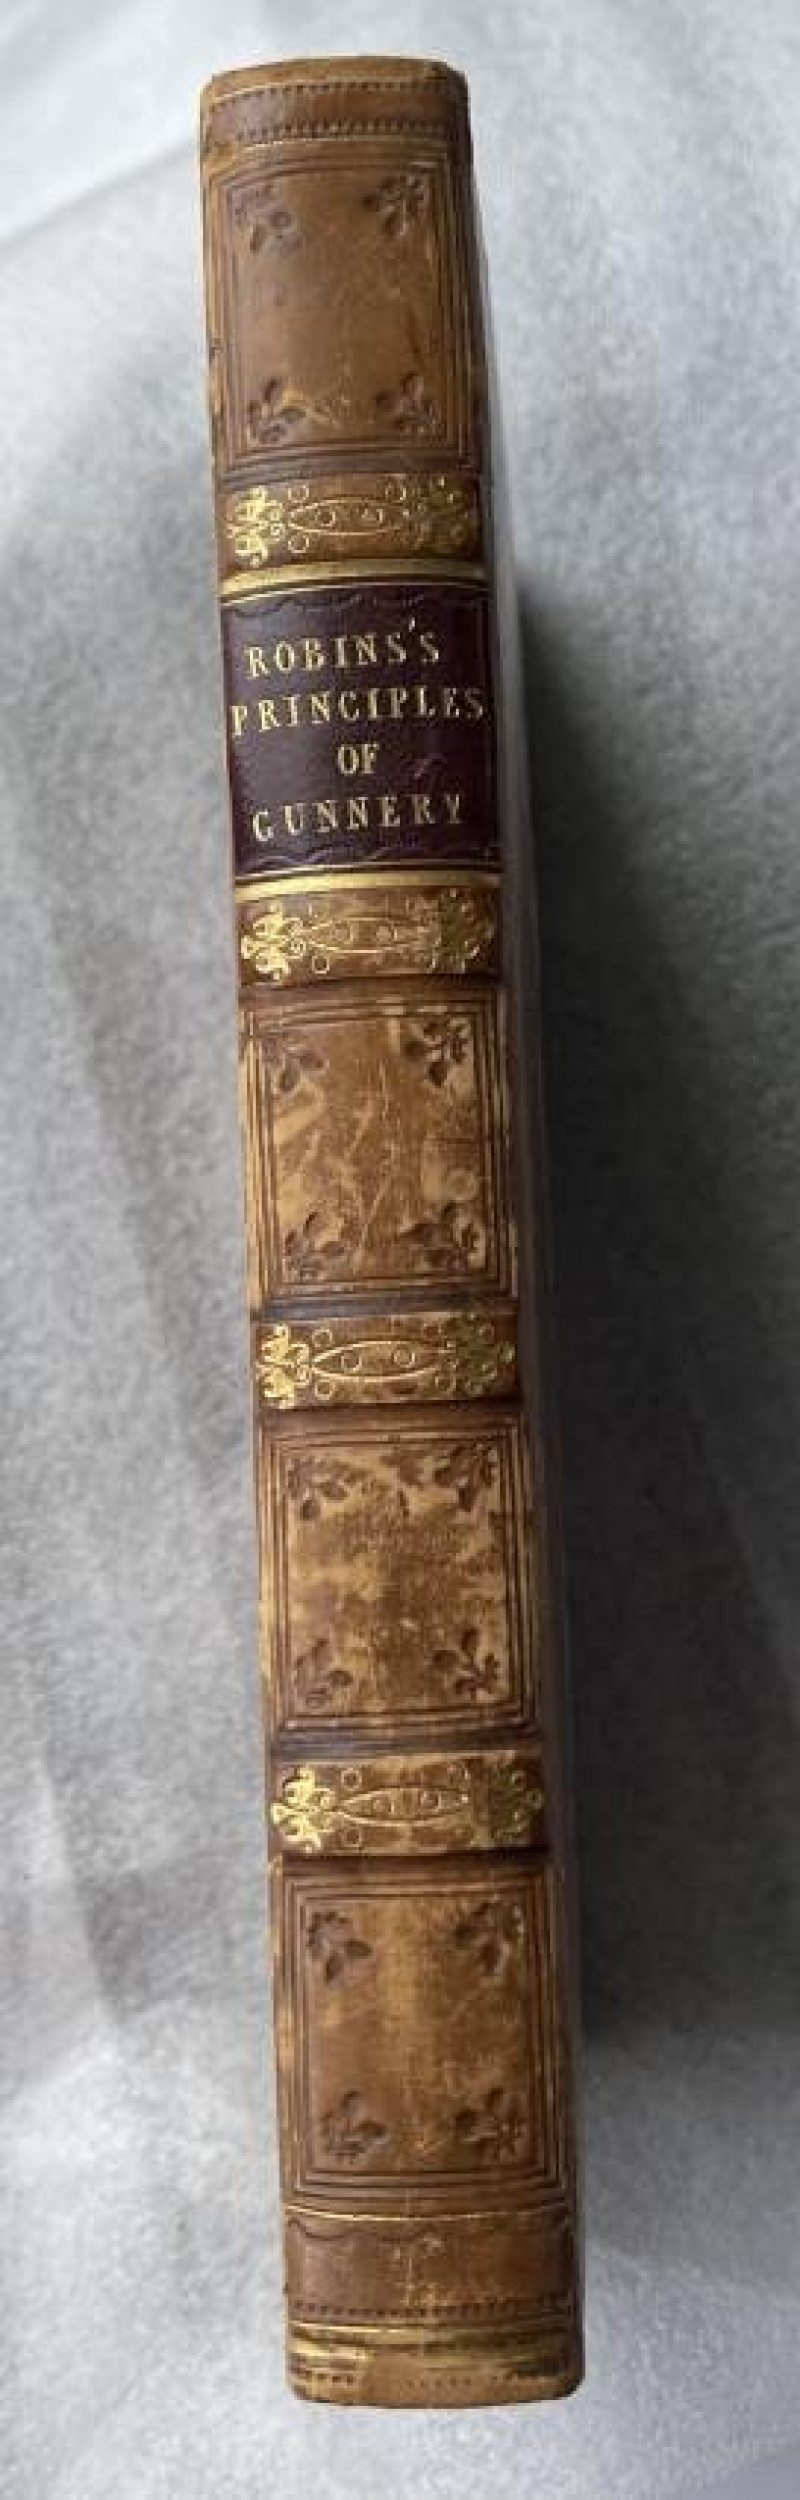 1805 military gun book, fine binding